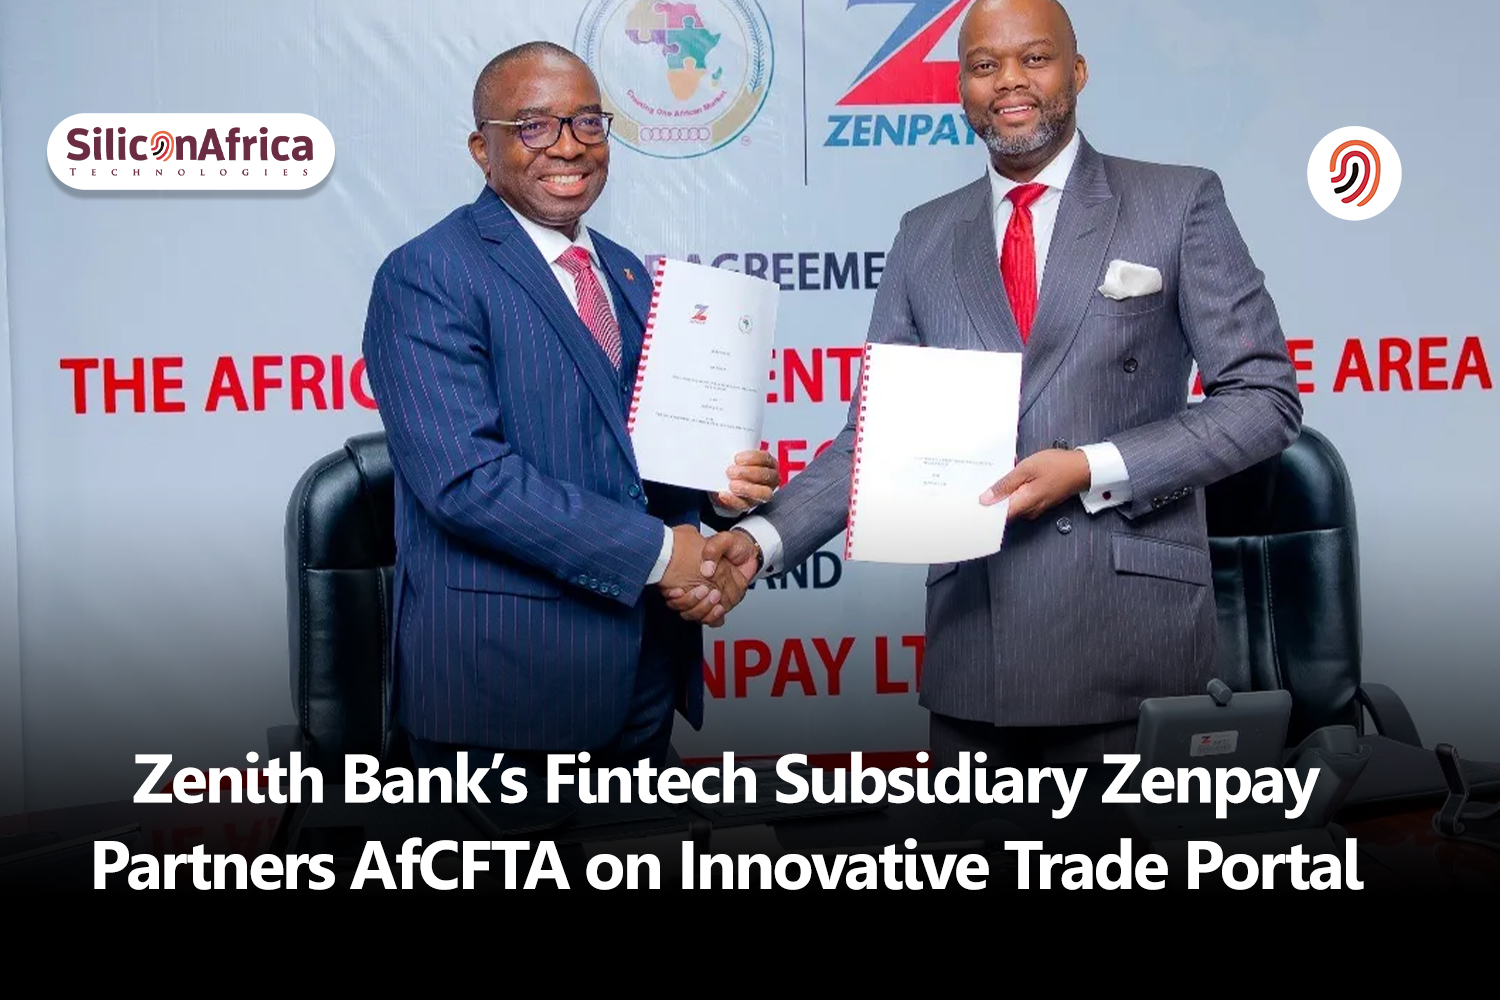 Zenpay Partners AfCFTA on Innovative Trade Portal